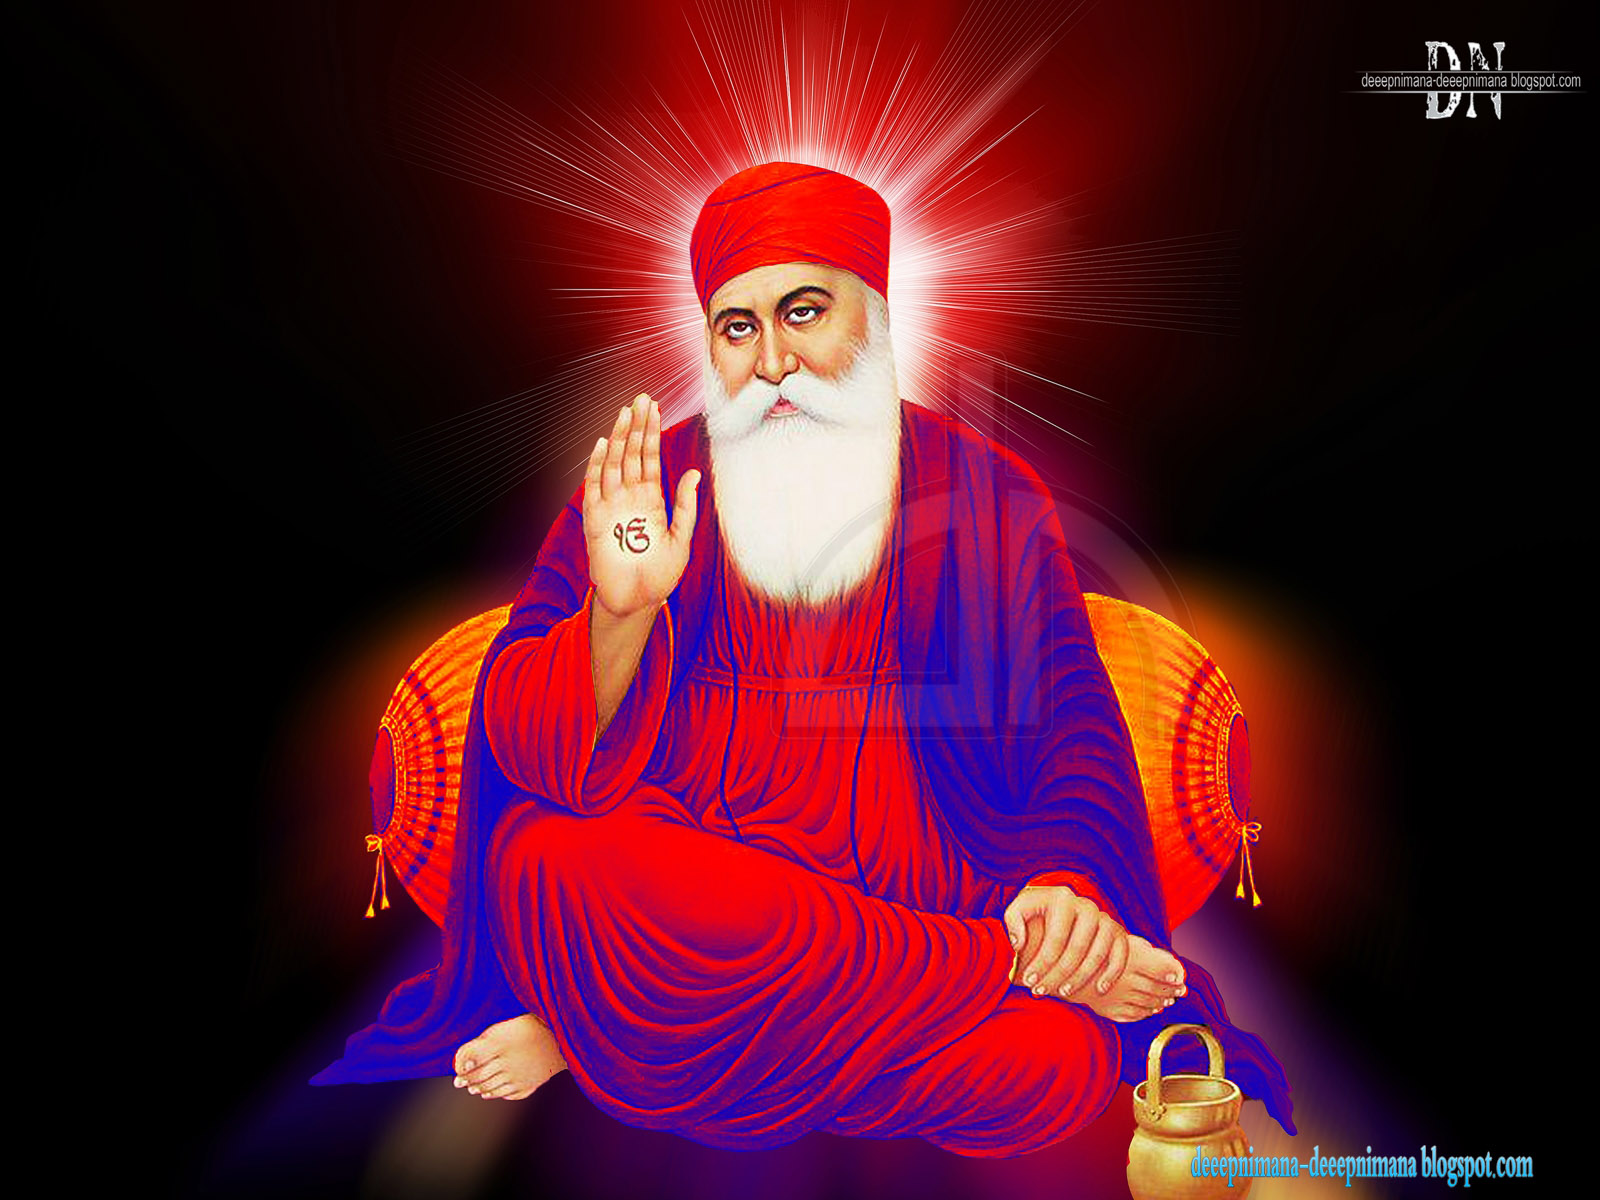 Guru Nanak Dev Ji Colourful - 1600x1200 Wallpaper 